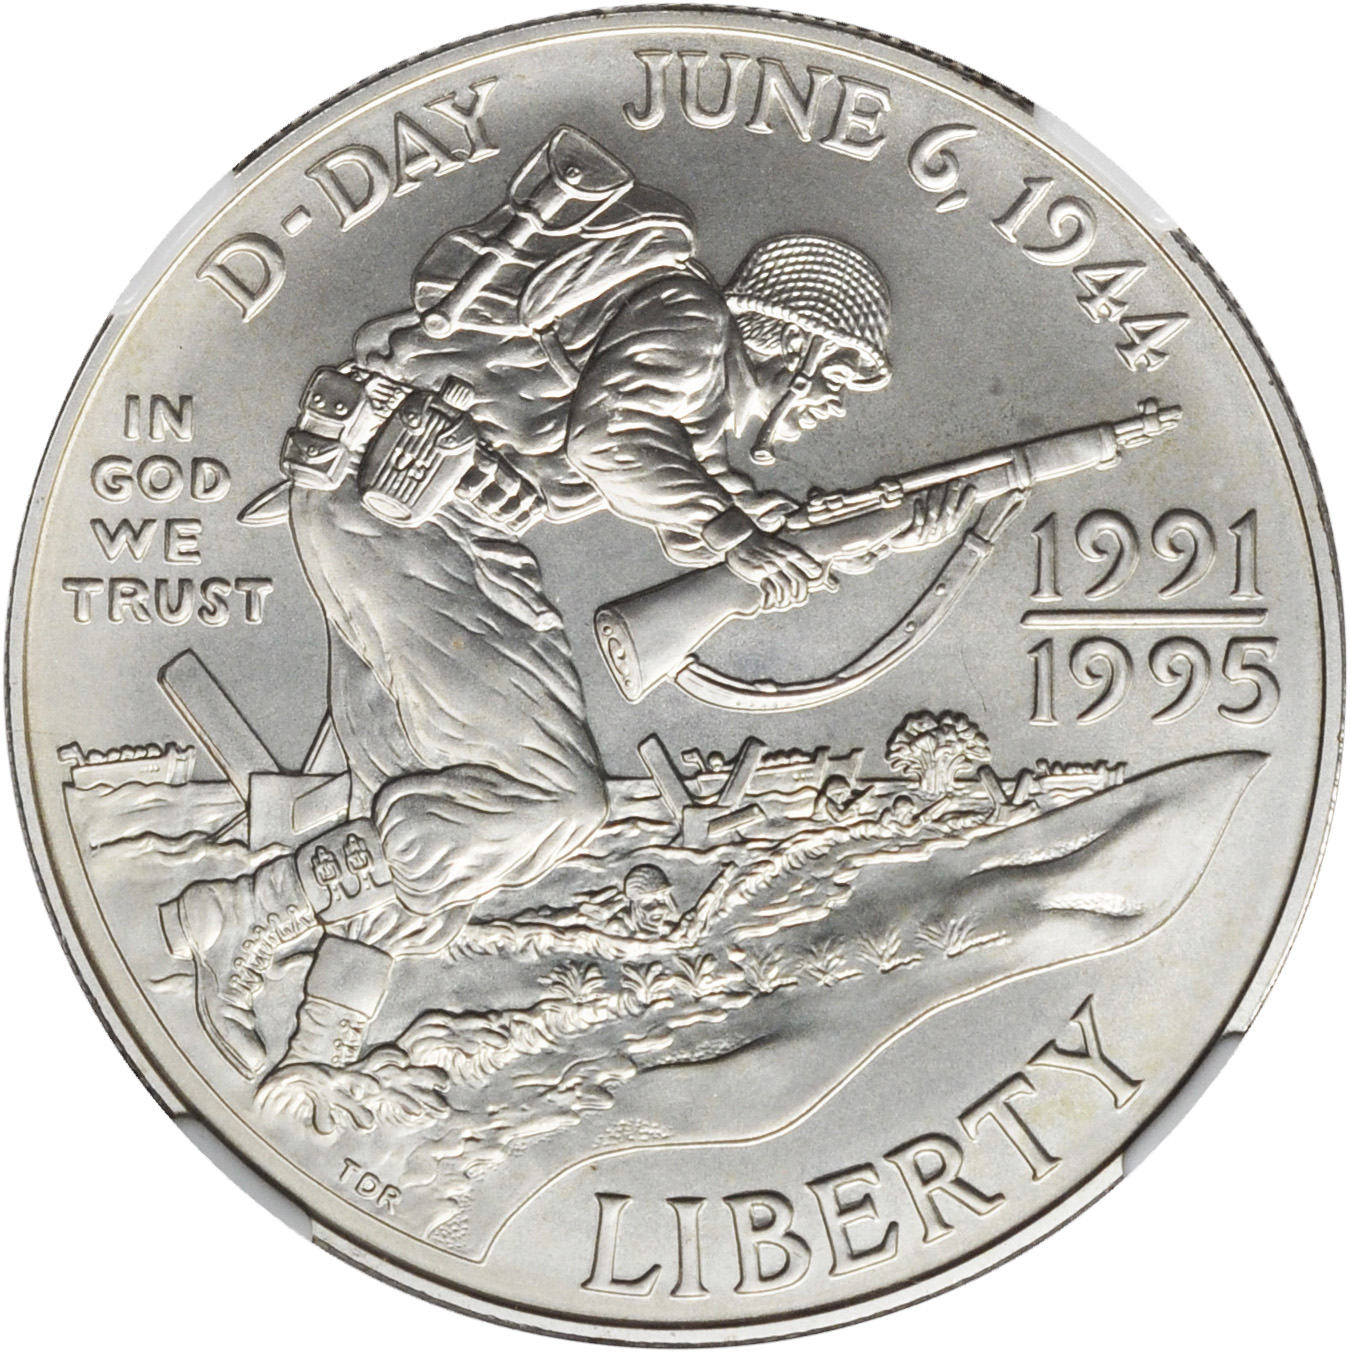 world war 2 coin series value